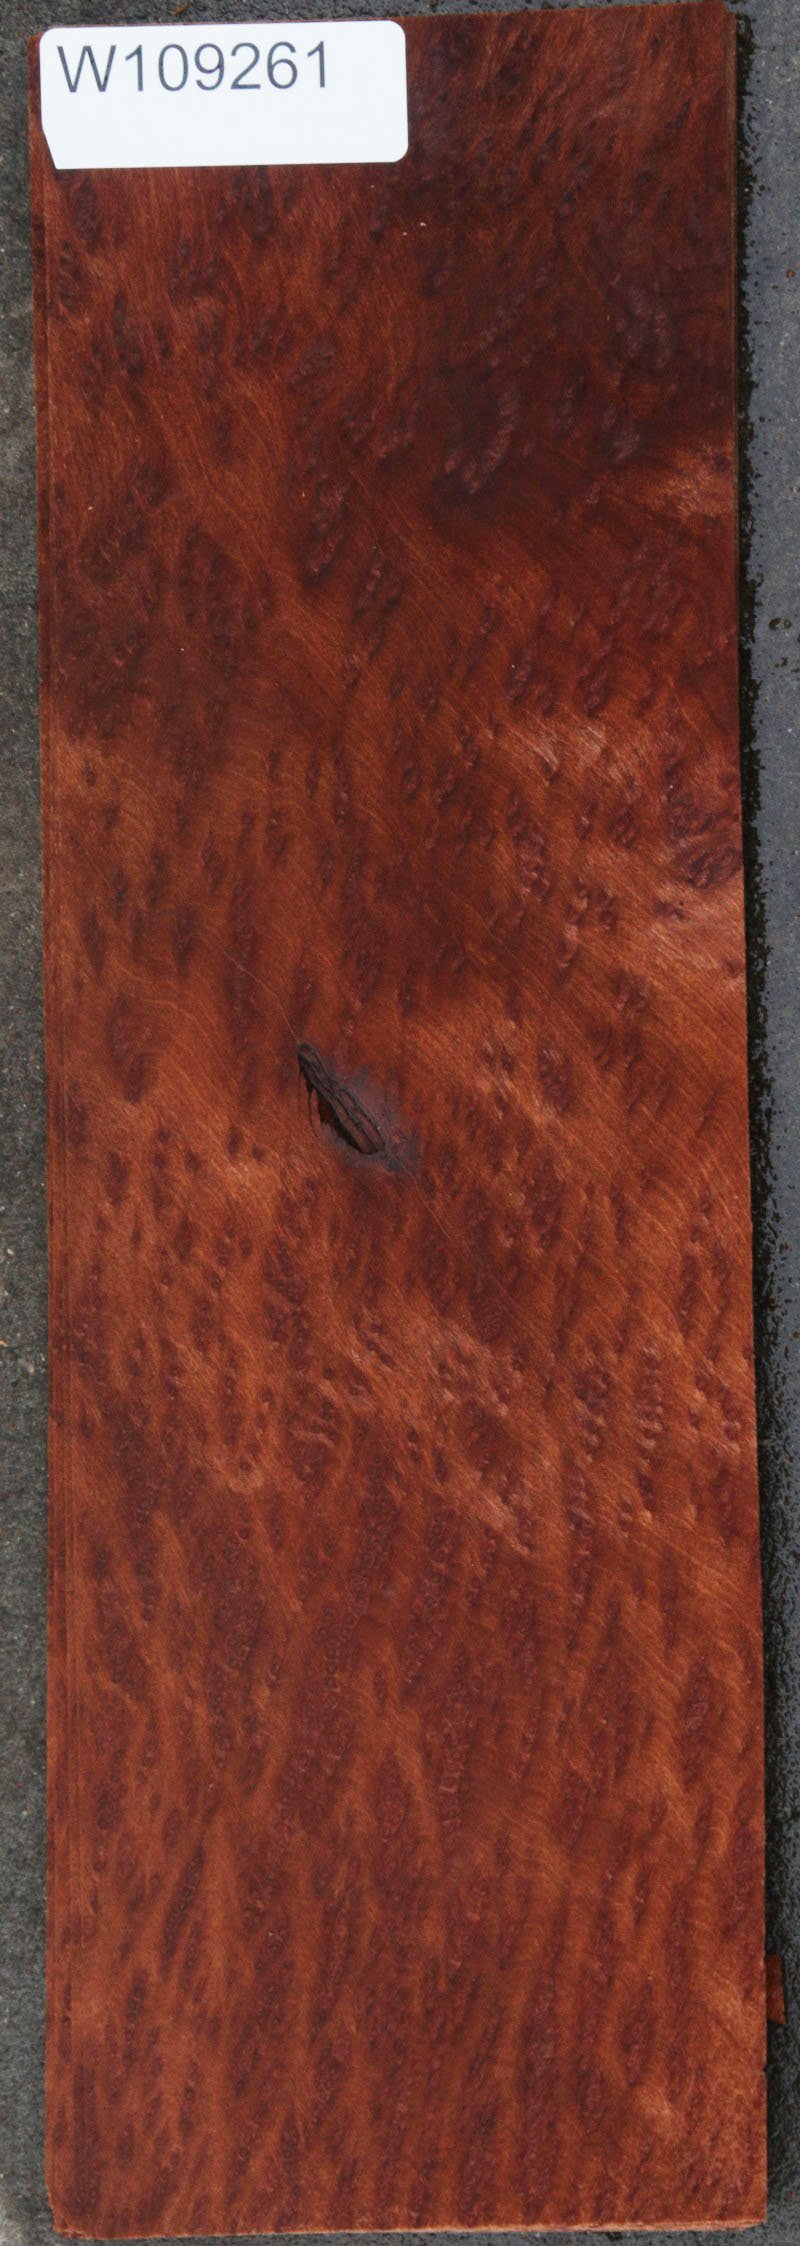 Exhibition Grade Redwood Burl Veneer Flitch - 12 Sheets